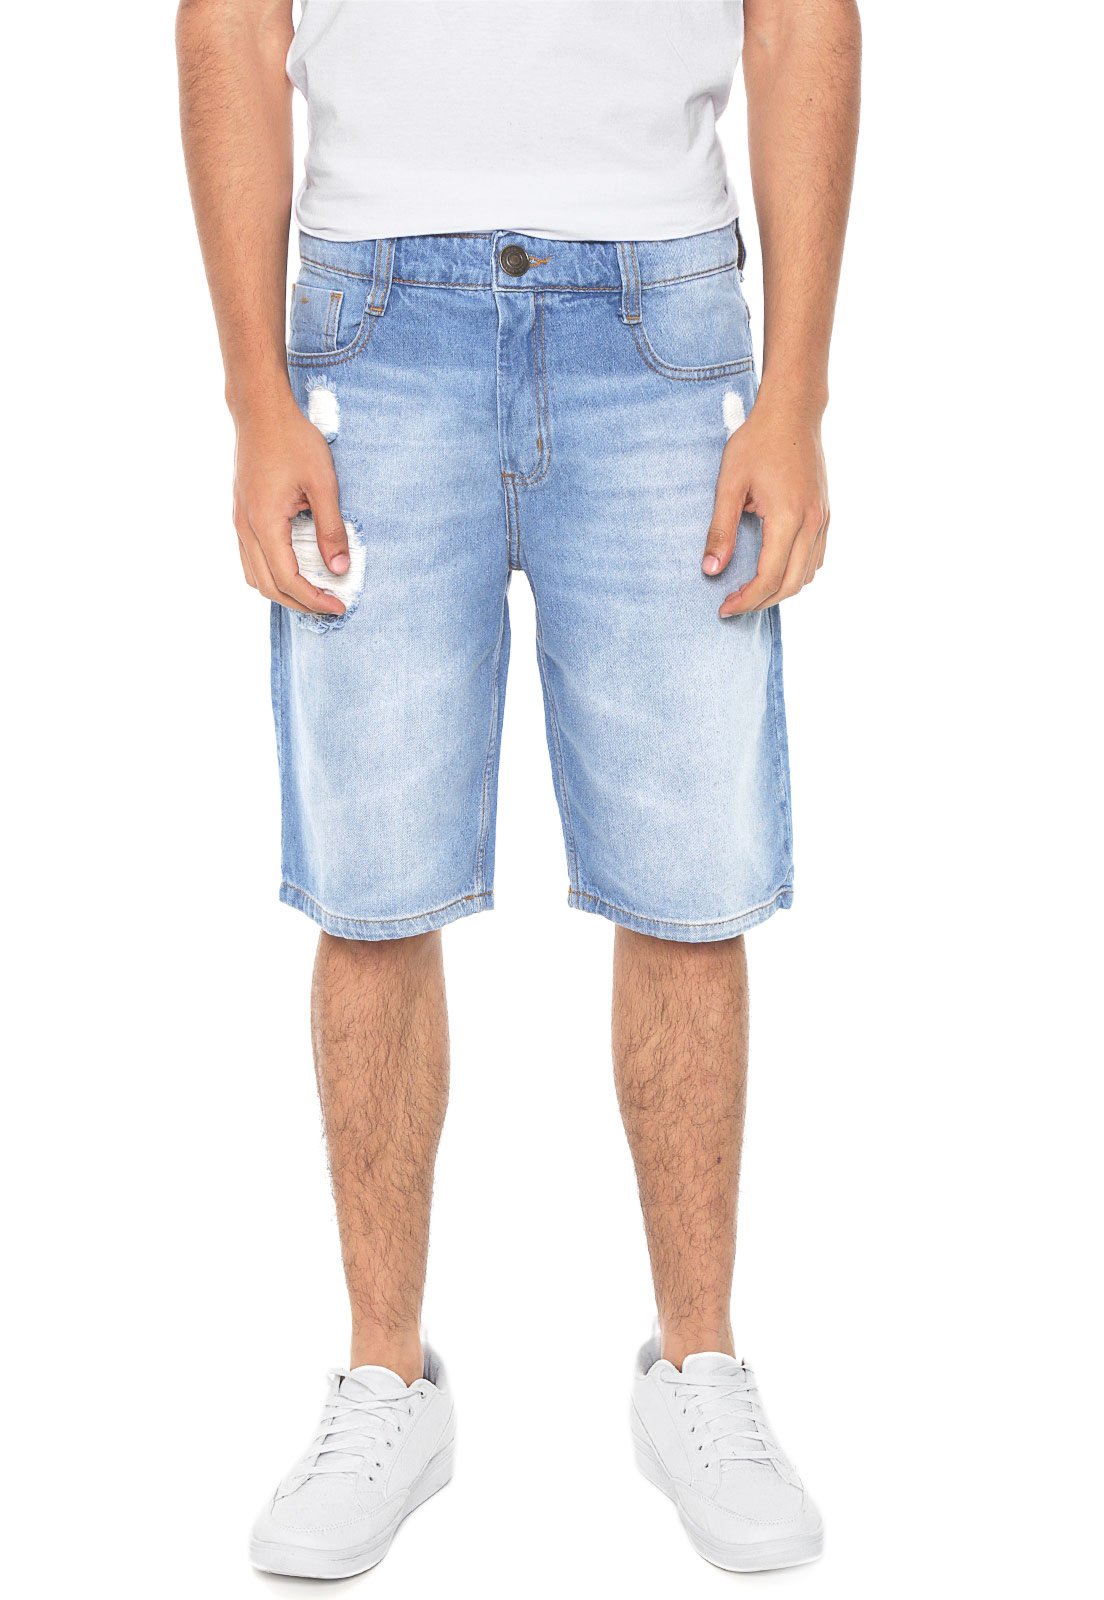 bermuda jeans masculina hering